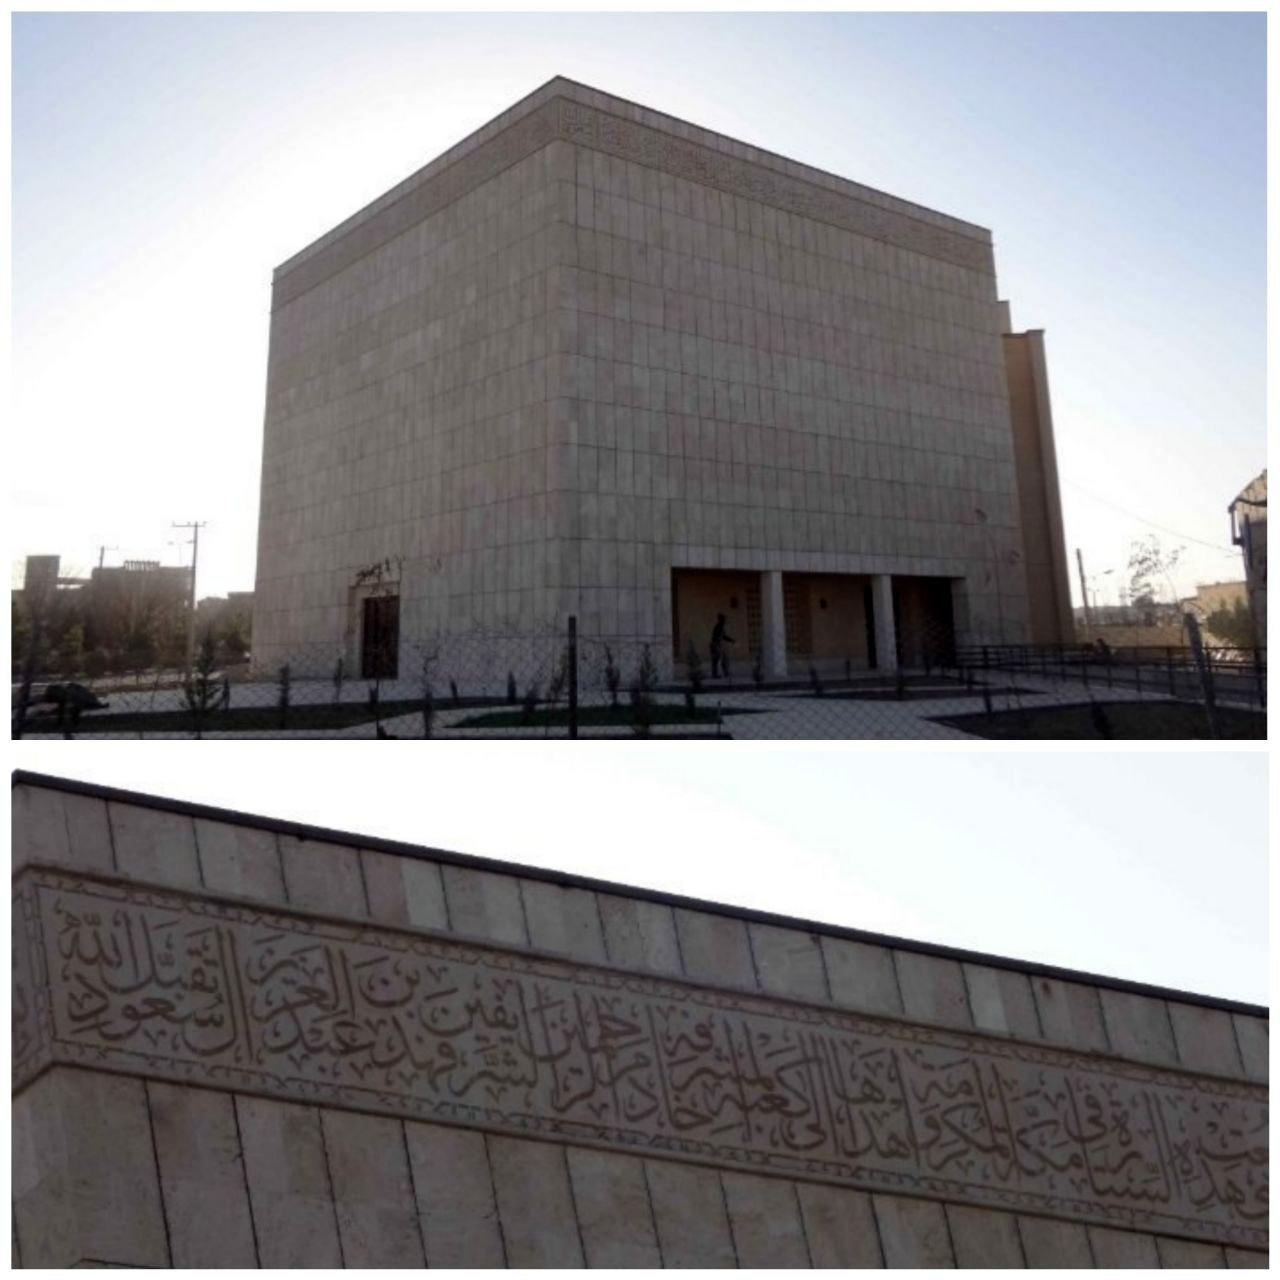 جزئیات جدید از ماجرای حک شدن نام پادشاه سعودی در ساختمان سازمان حج و زیارت استان یزد